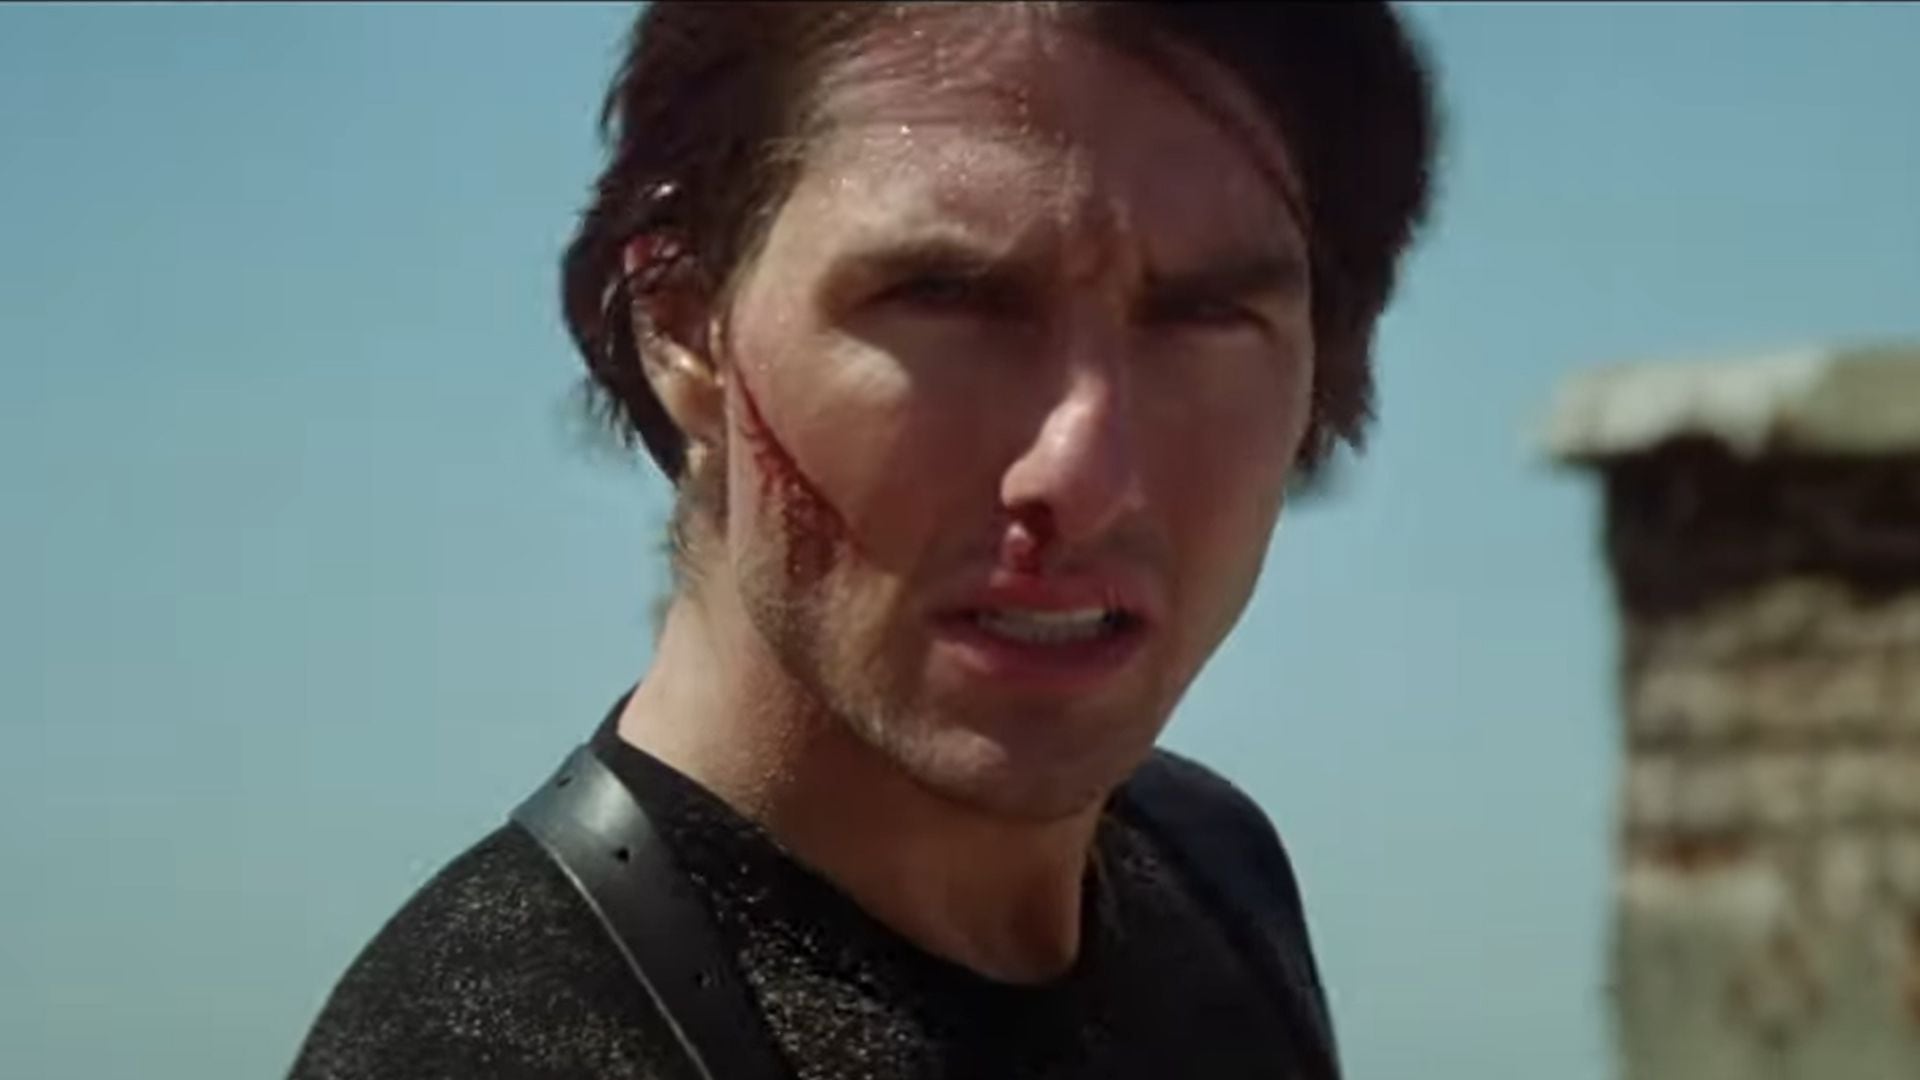 Misión: Imposible 2 (en inglés, Mission: Impossible 2 o M:I-2) es una película dirigida por John Woo y protagonizada por Tom Cruise.